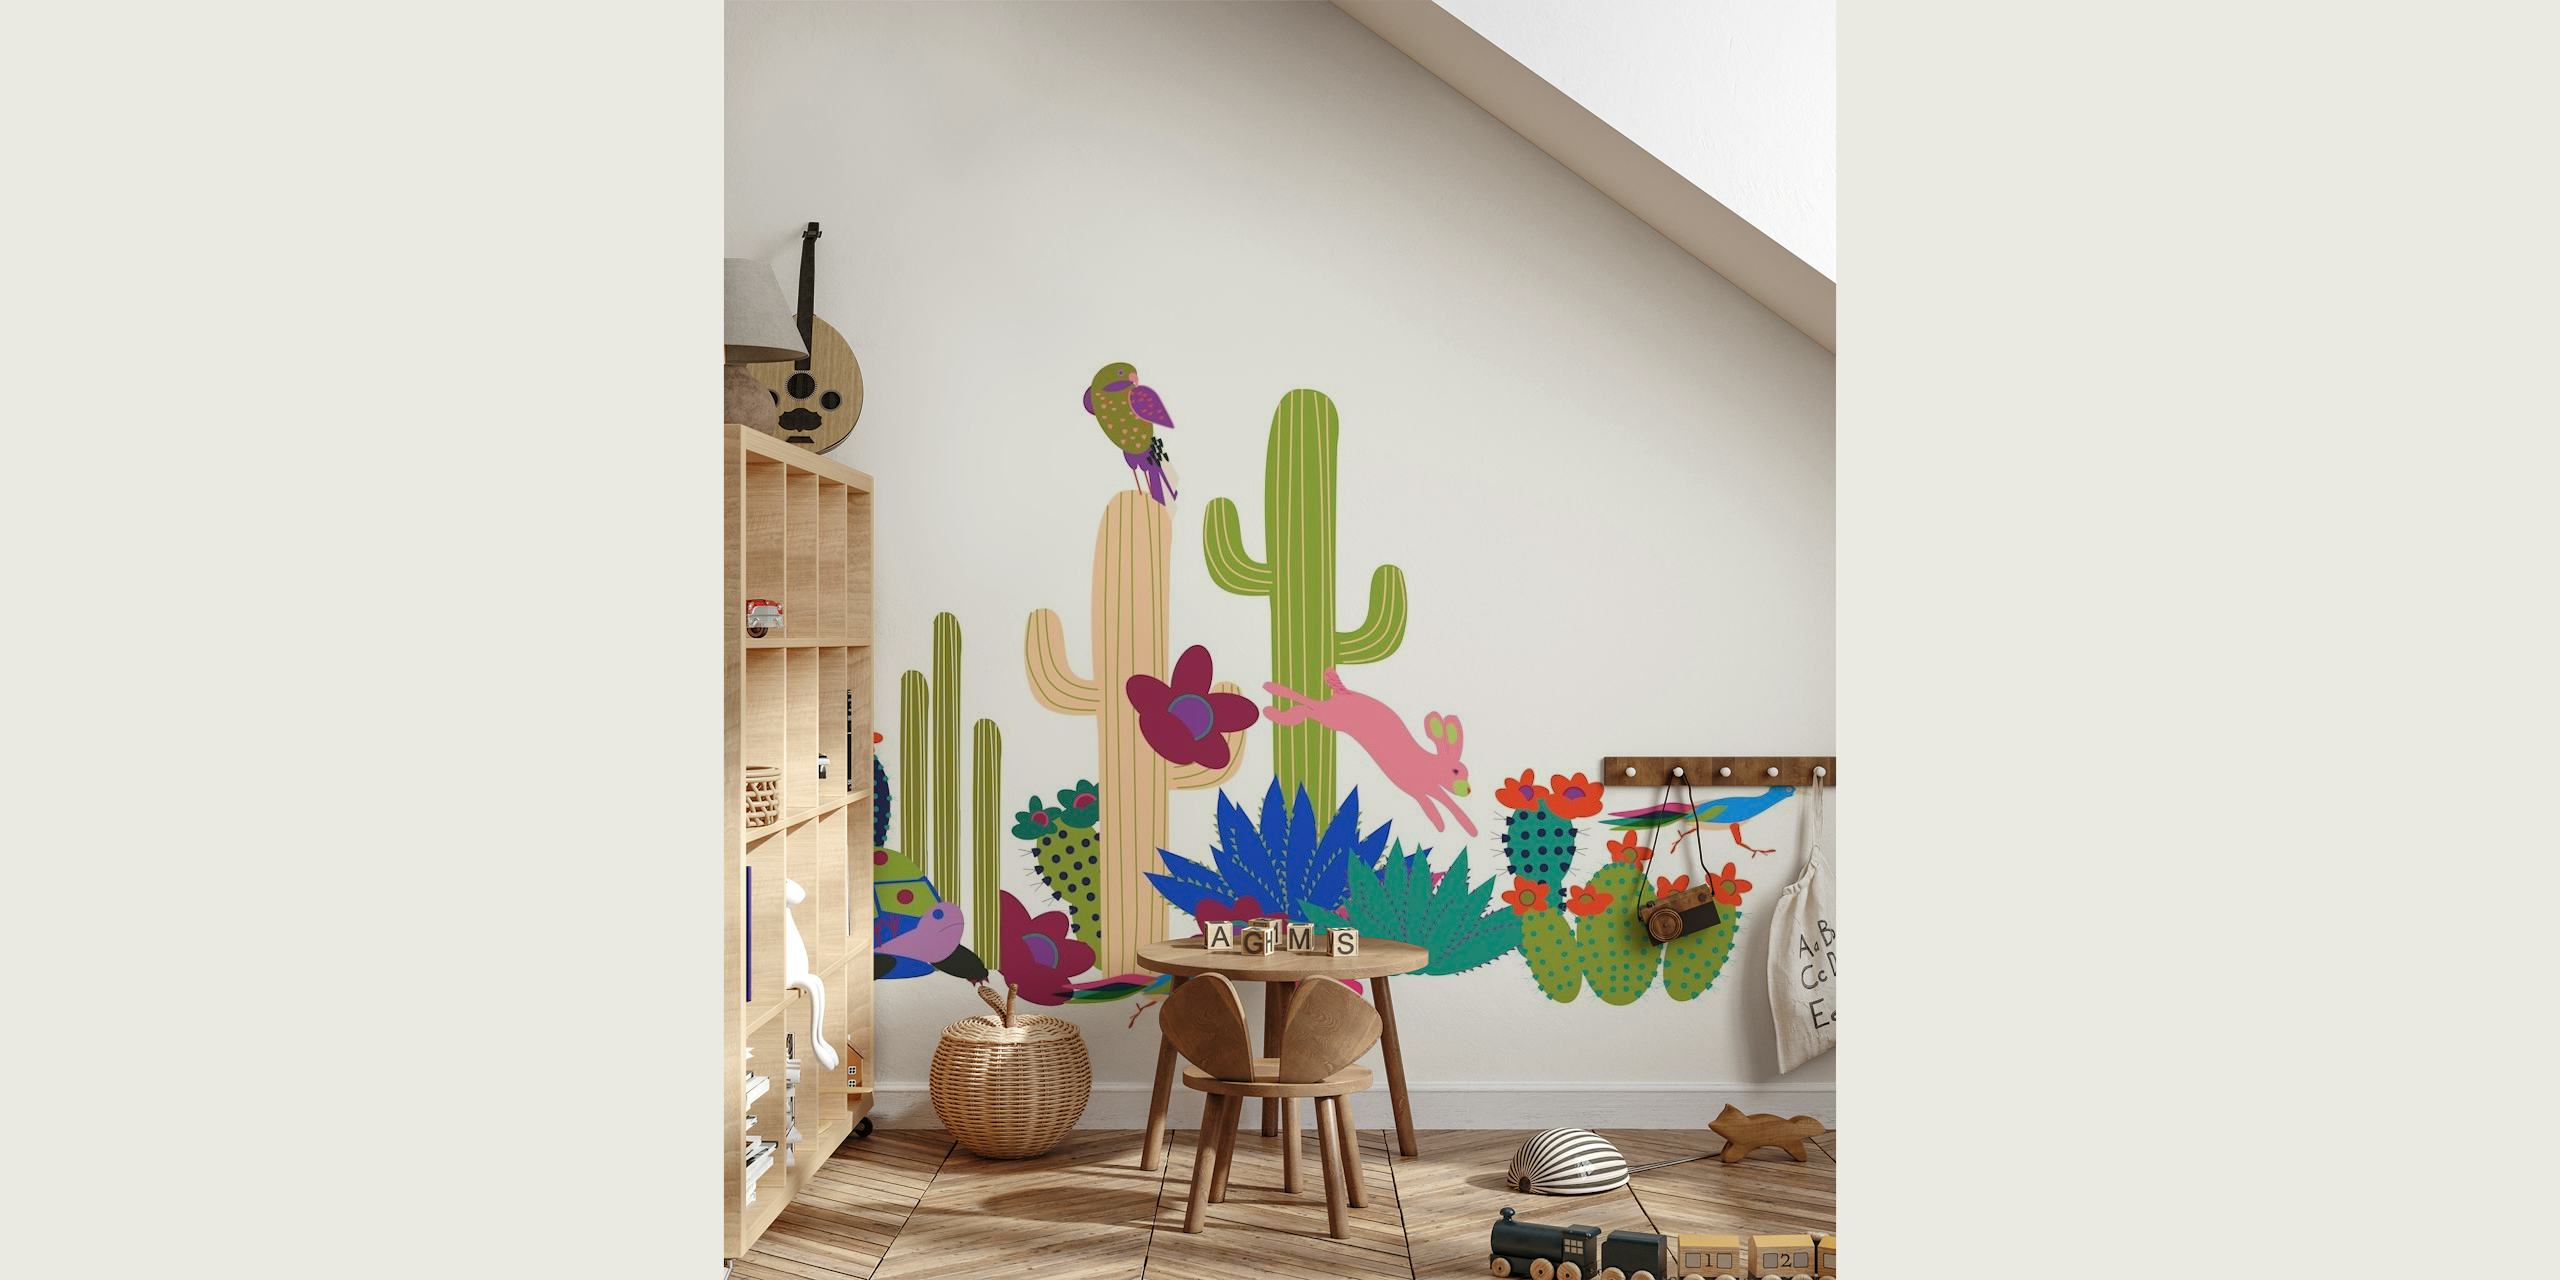 Farbenfrohe, animierte Wüstenszene mit verschiedenen Kakteen und Wüstenpflanzen auf einer Fototapete